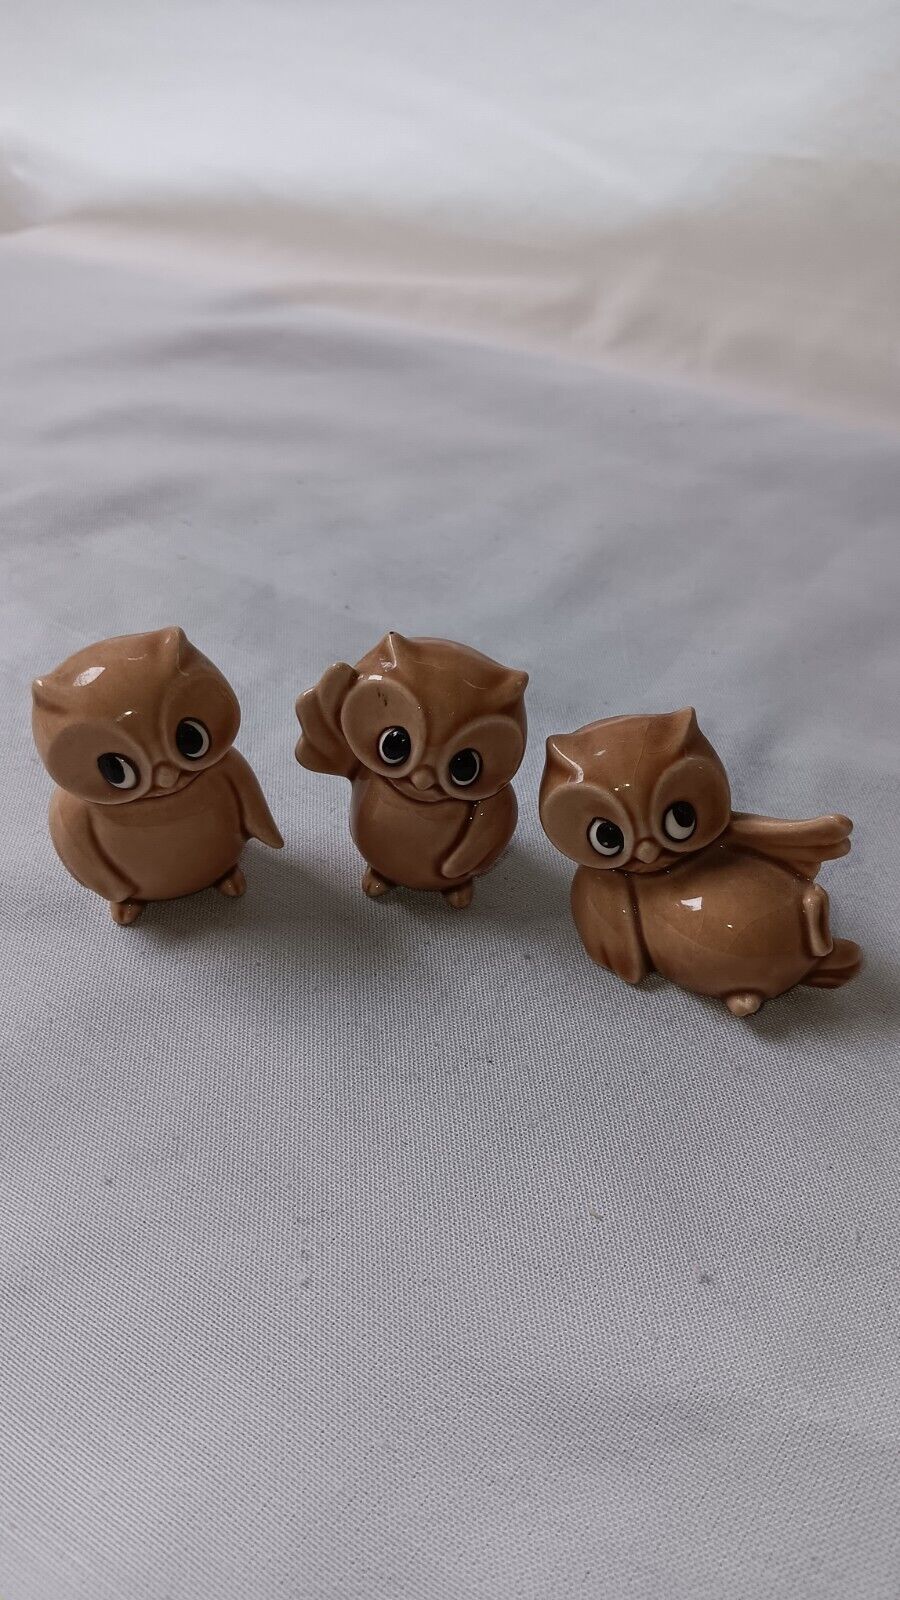 Vintage Miniature Owl Figurines Set of 3